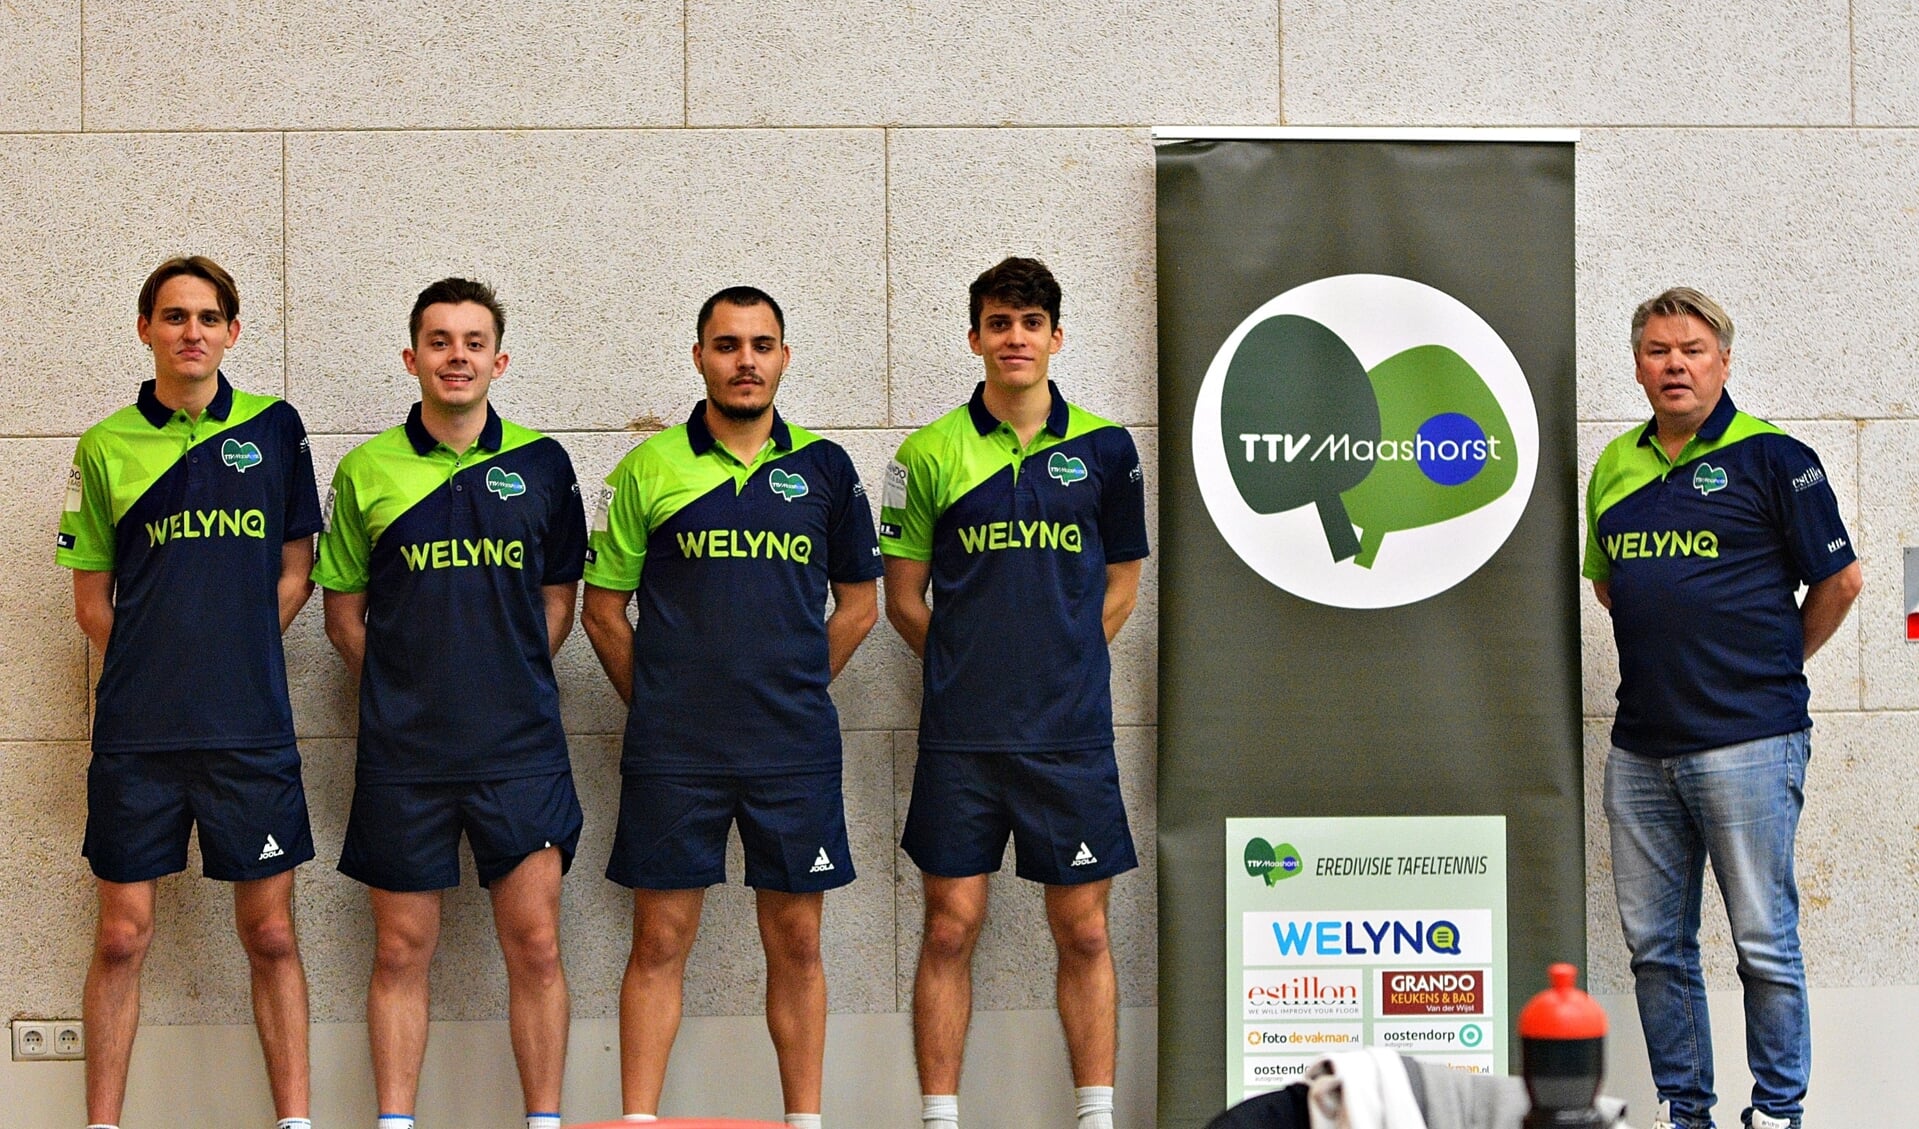 WelynQ/TTV Maashorst speelde voor het eerst in hun nieuwe sport-outfit. Op de foto Elias Hardmeier, Juan Pedro Sanchez, Mauro Schärrer, Nolan Schultz en coach Han Gootzen.